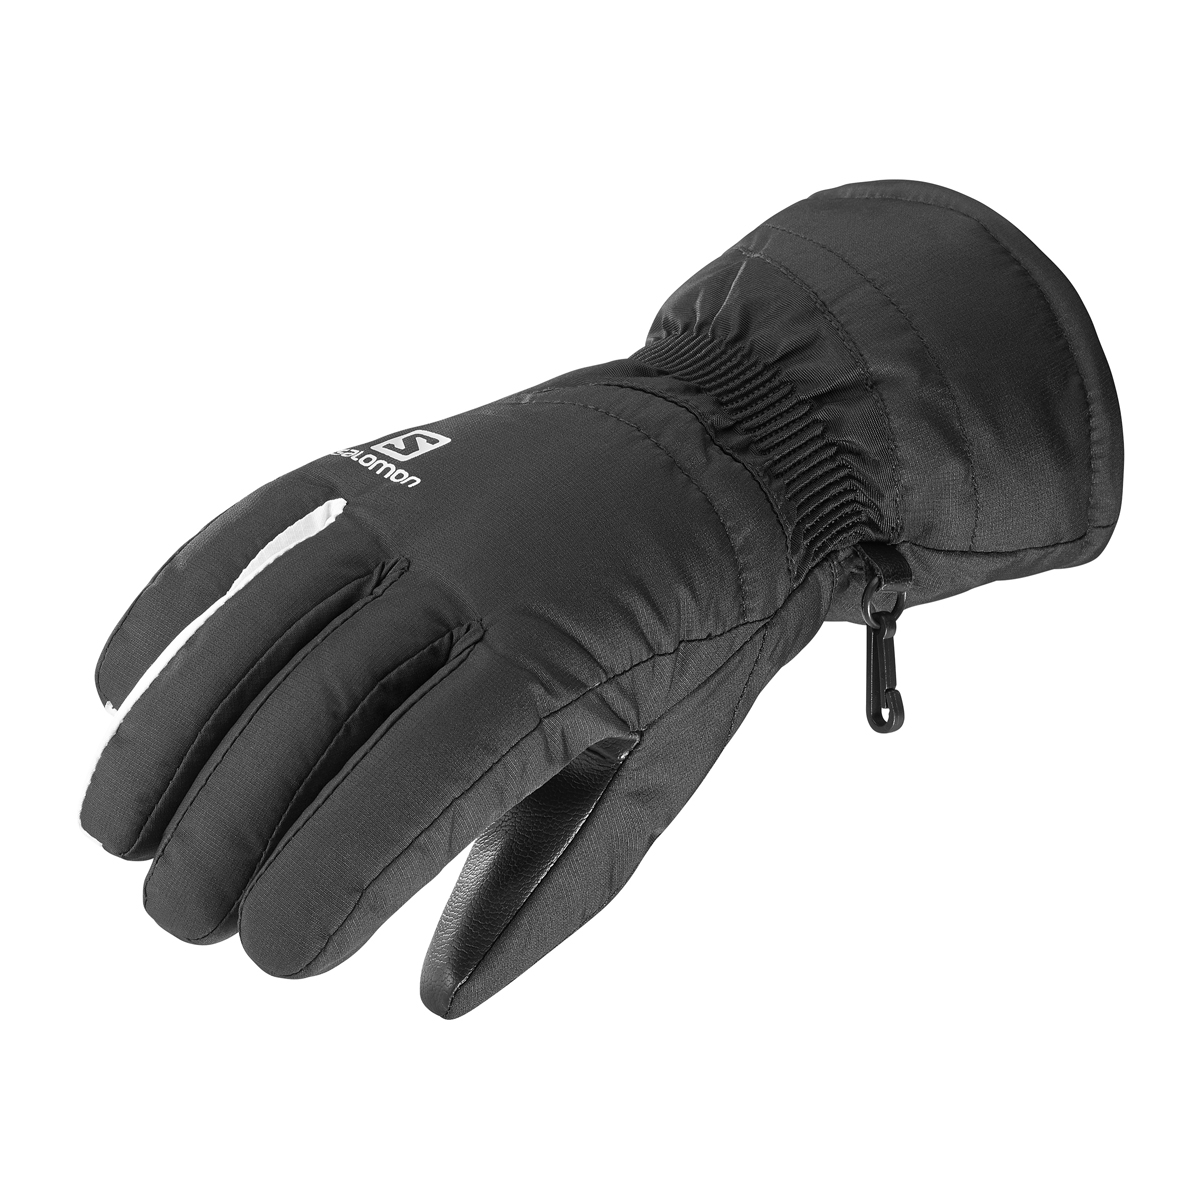 Горнолыжные перчатки Salomon Gloves Force W Black/white m